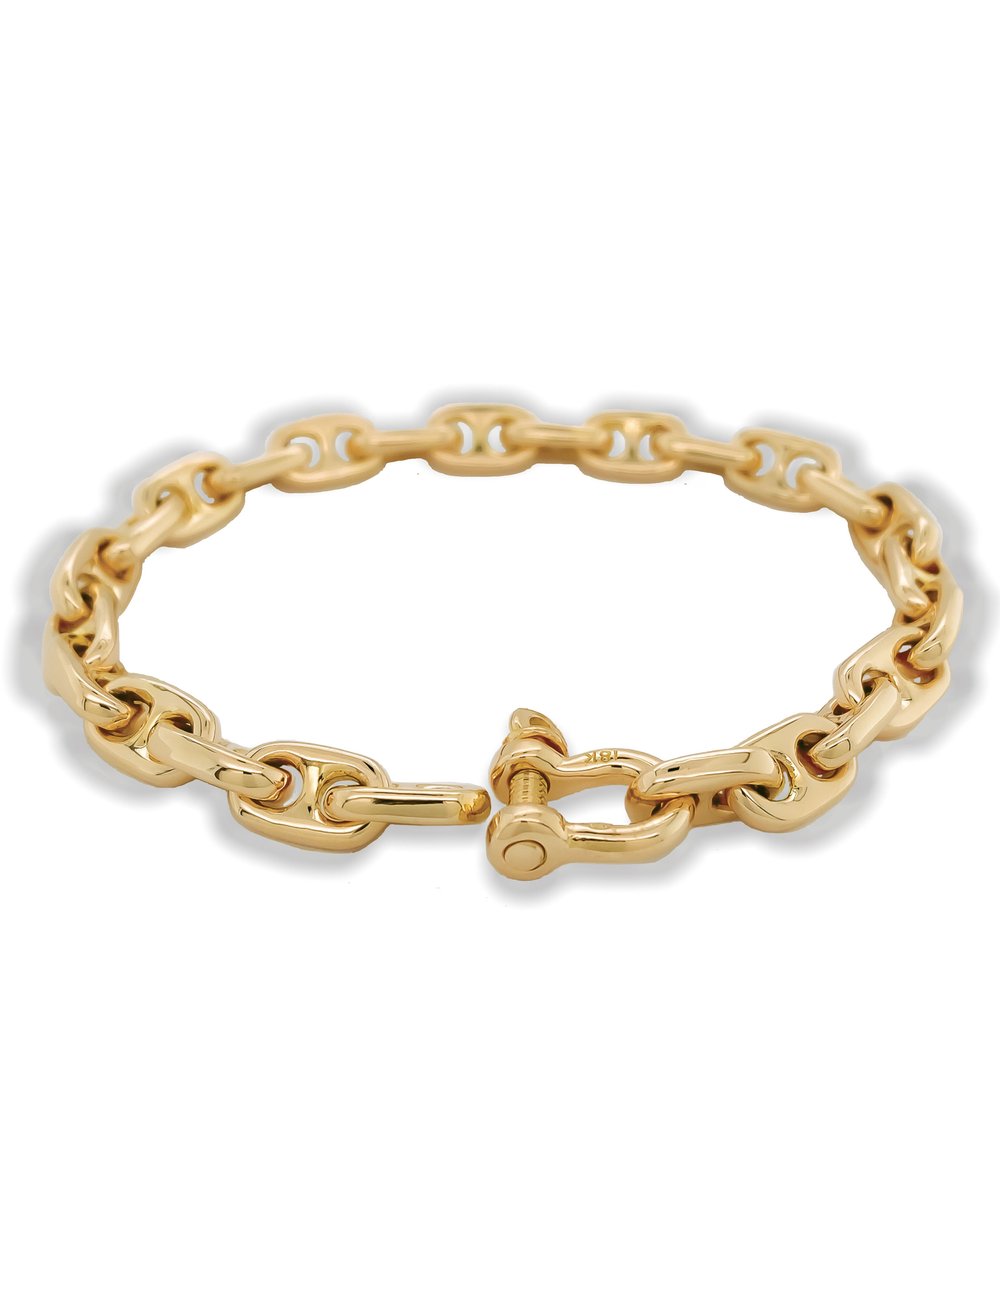 Anchor Chain Bracelet - Small Link Nautical Gold Bracelet - Aumaris